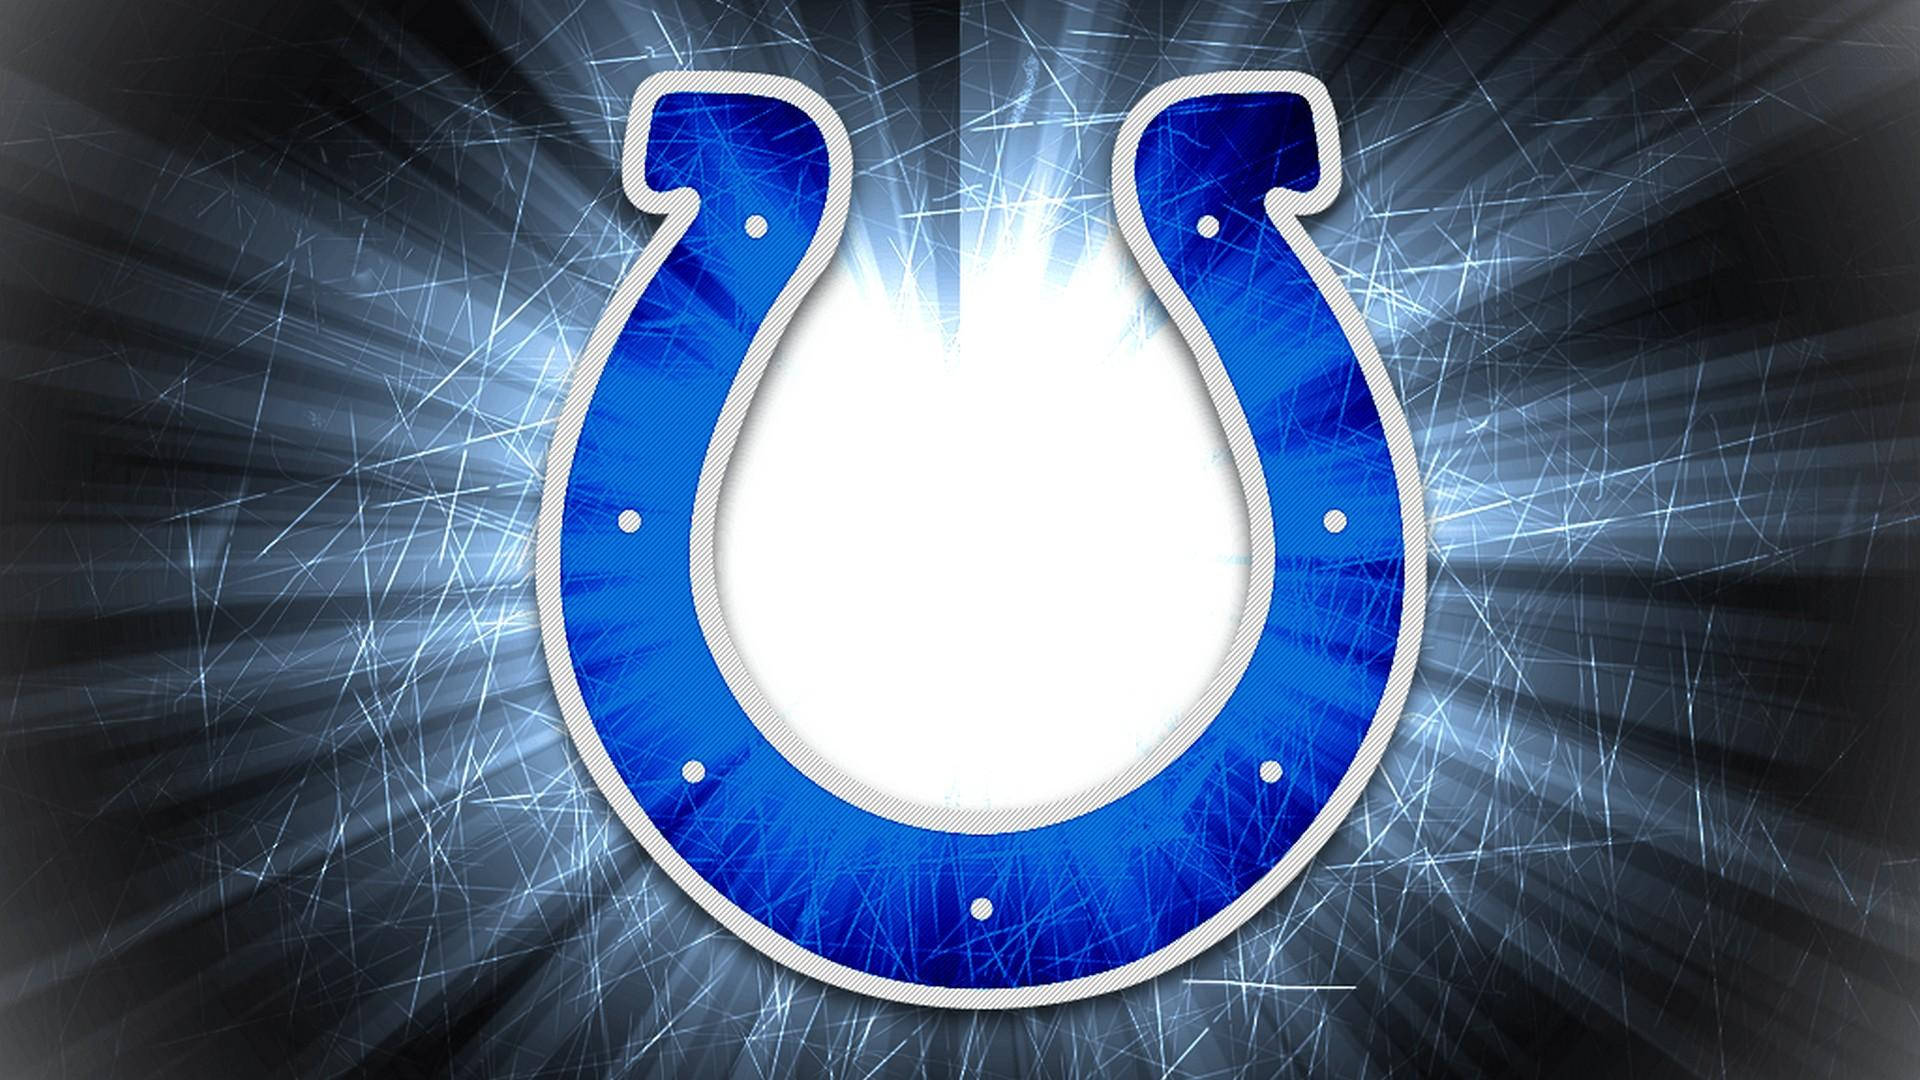 Nfl Team Indianapolis Colts Fanart Logo Wallpaper